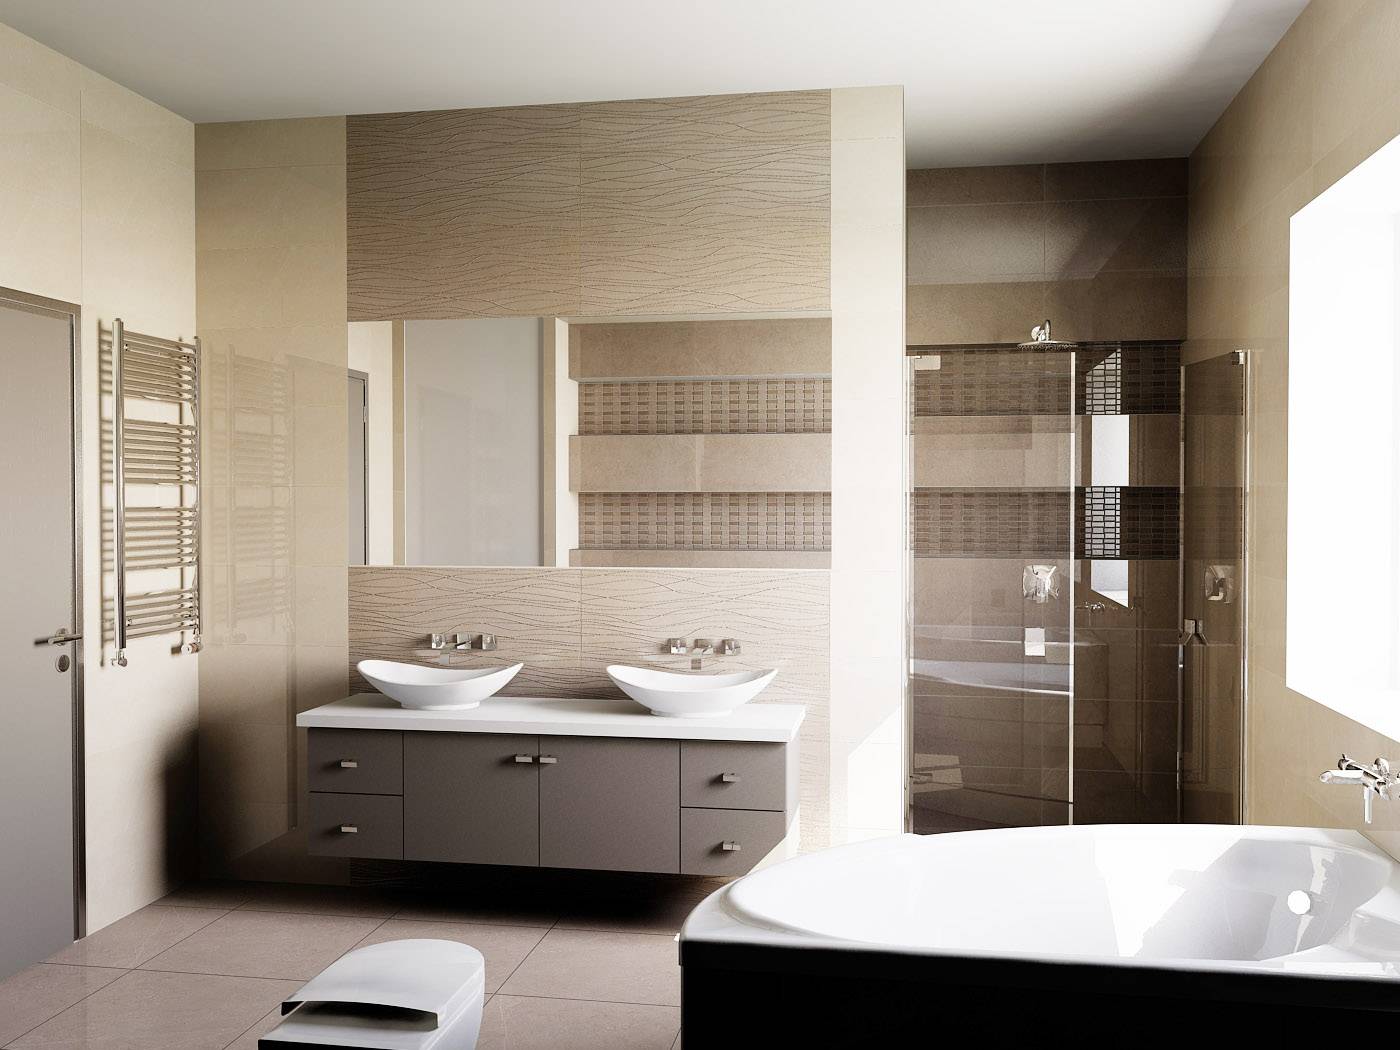 дизайн ванной комнаты в современном стиле .дизайн ванной комнаты в современном стиле. дизайнер Андрей Глебов. Artlevel interior design